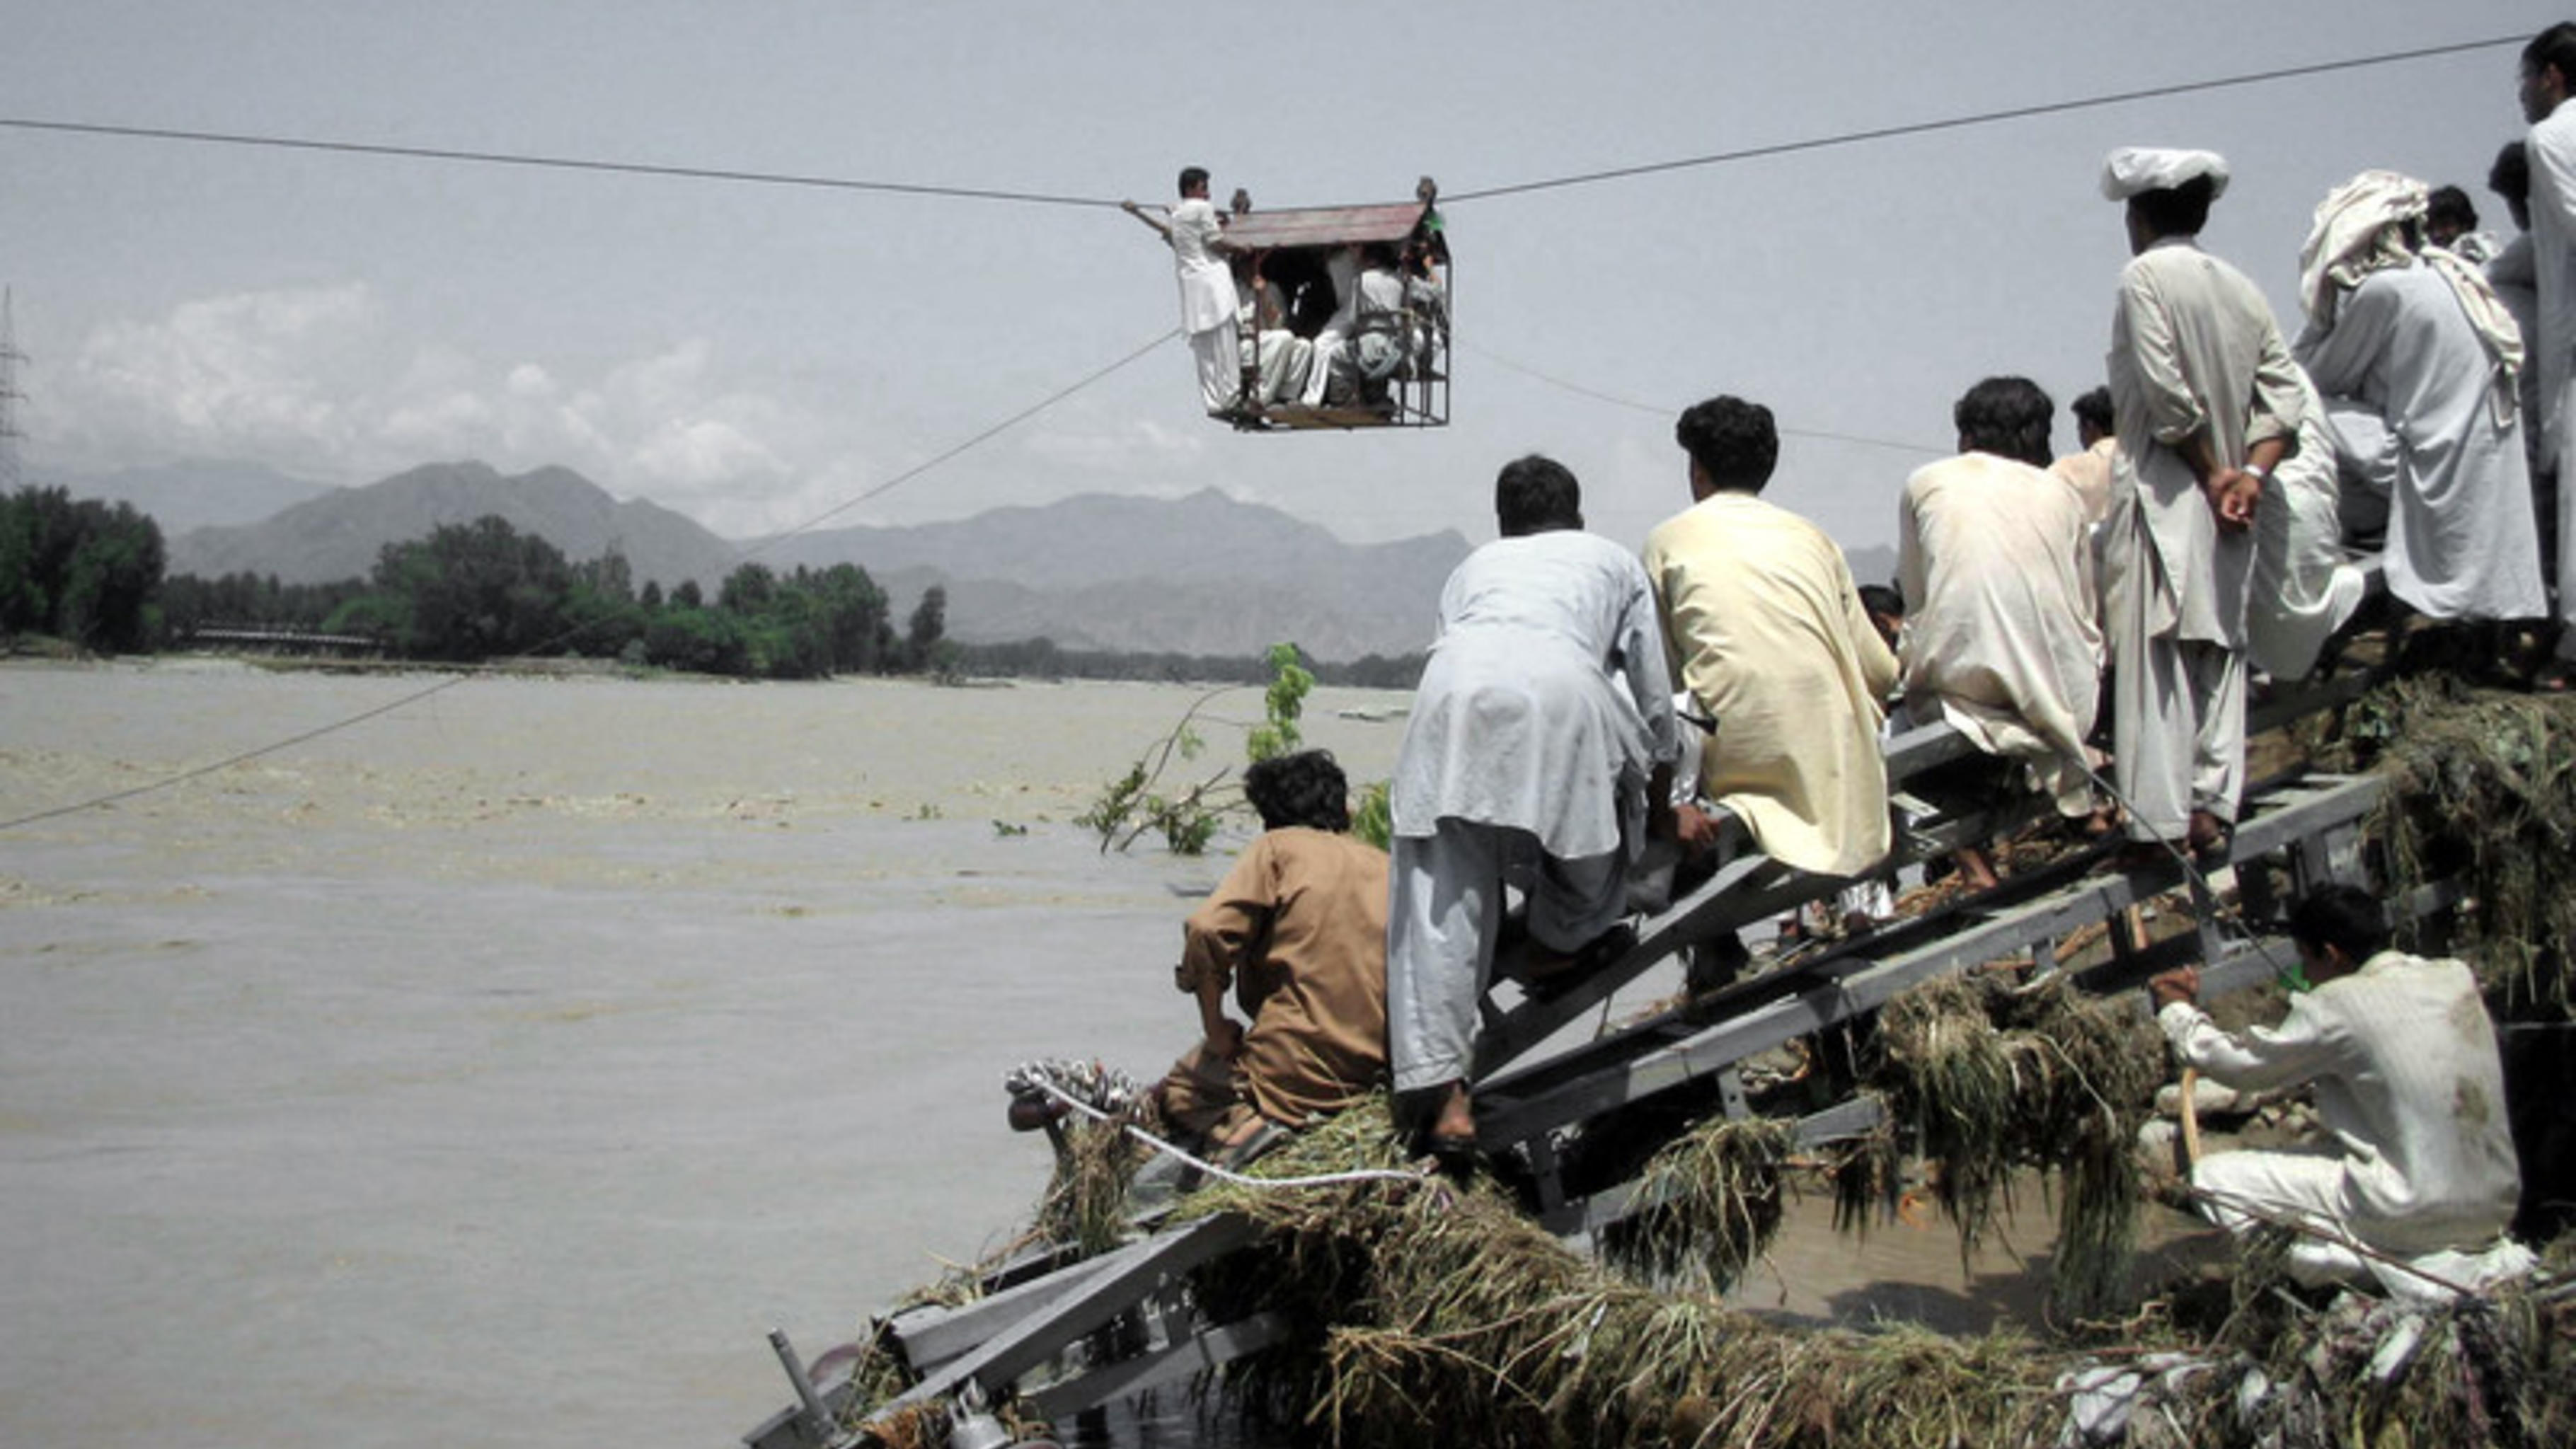 Foto: Menschen nutzen eine Seilbahn zur Flucht vor dem Wasser.